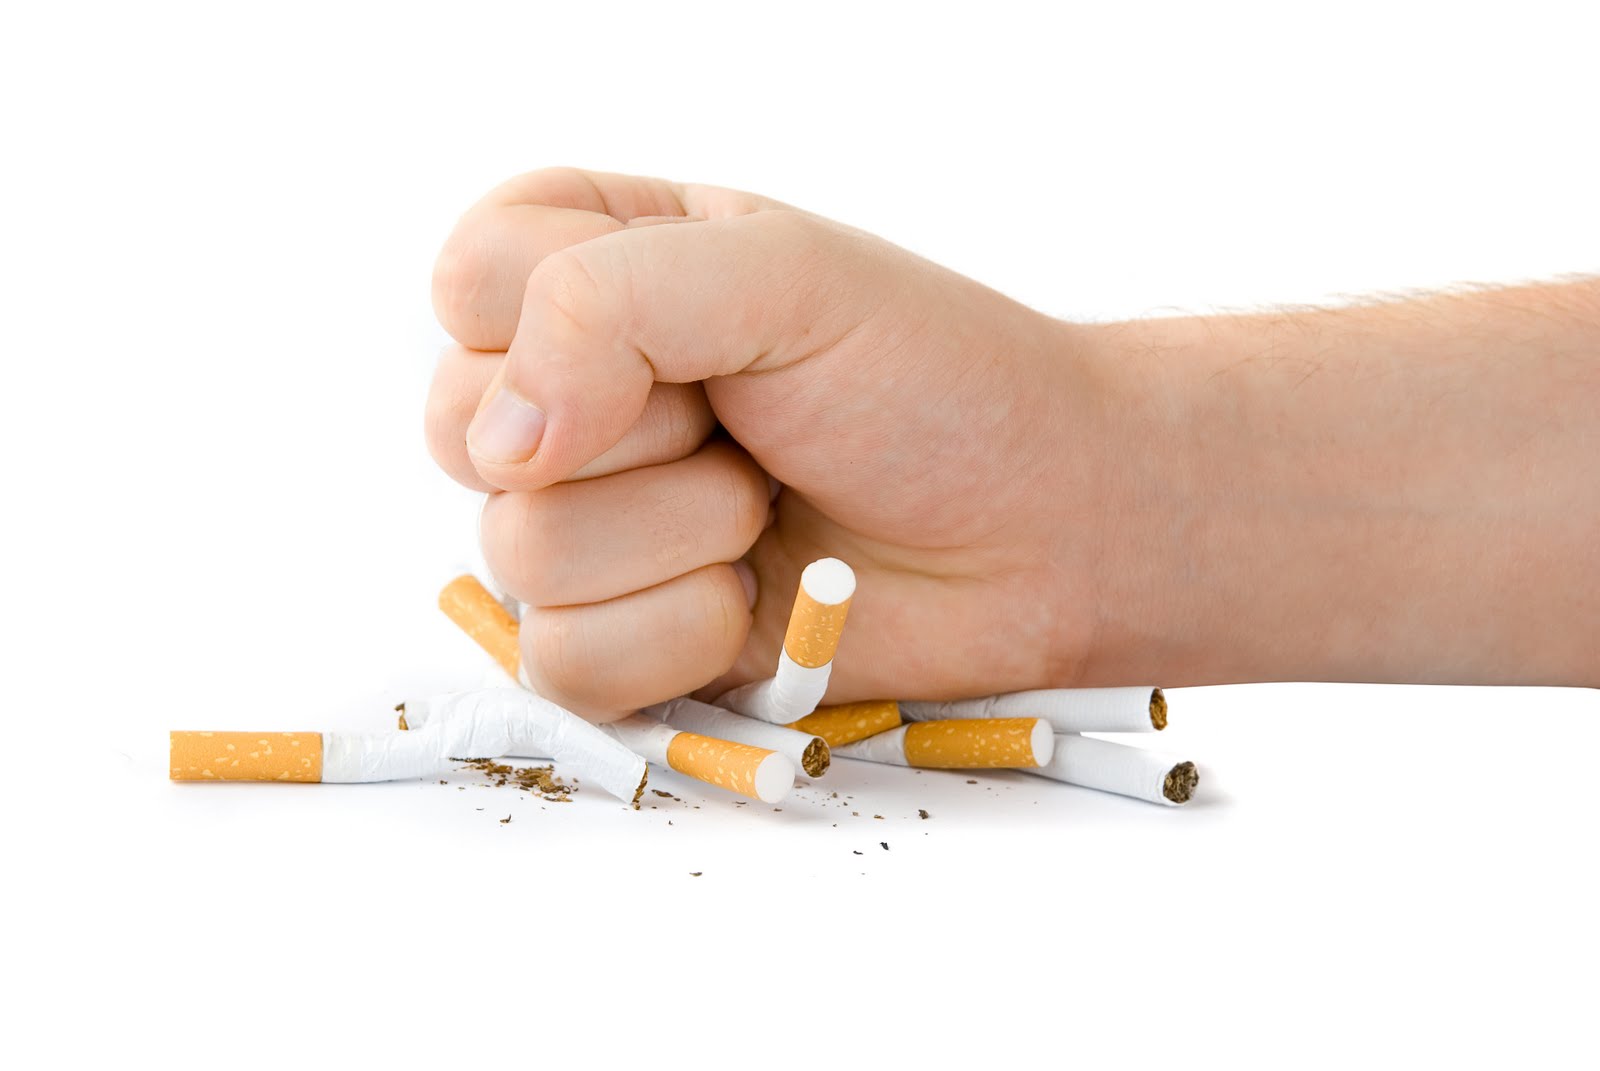 Salvatore Panza, Addio fumo: alcuni consigli per smettere di fumare